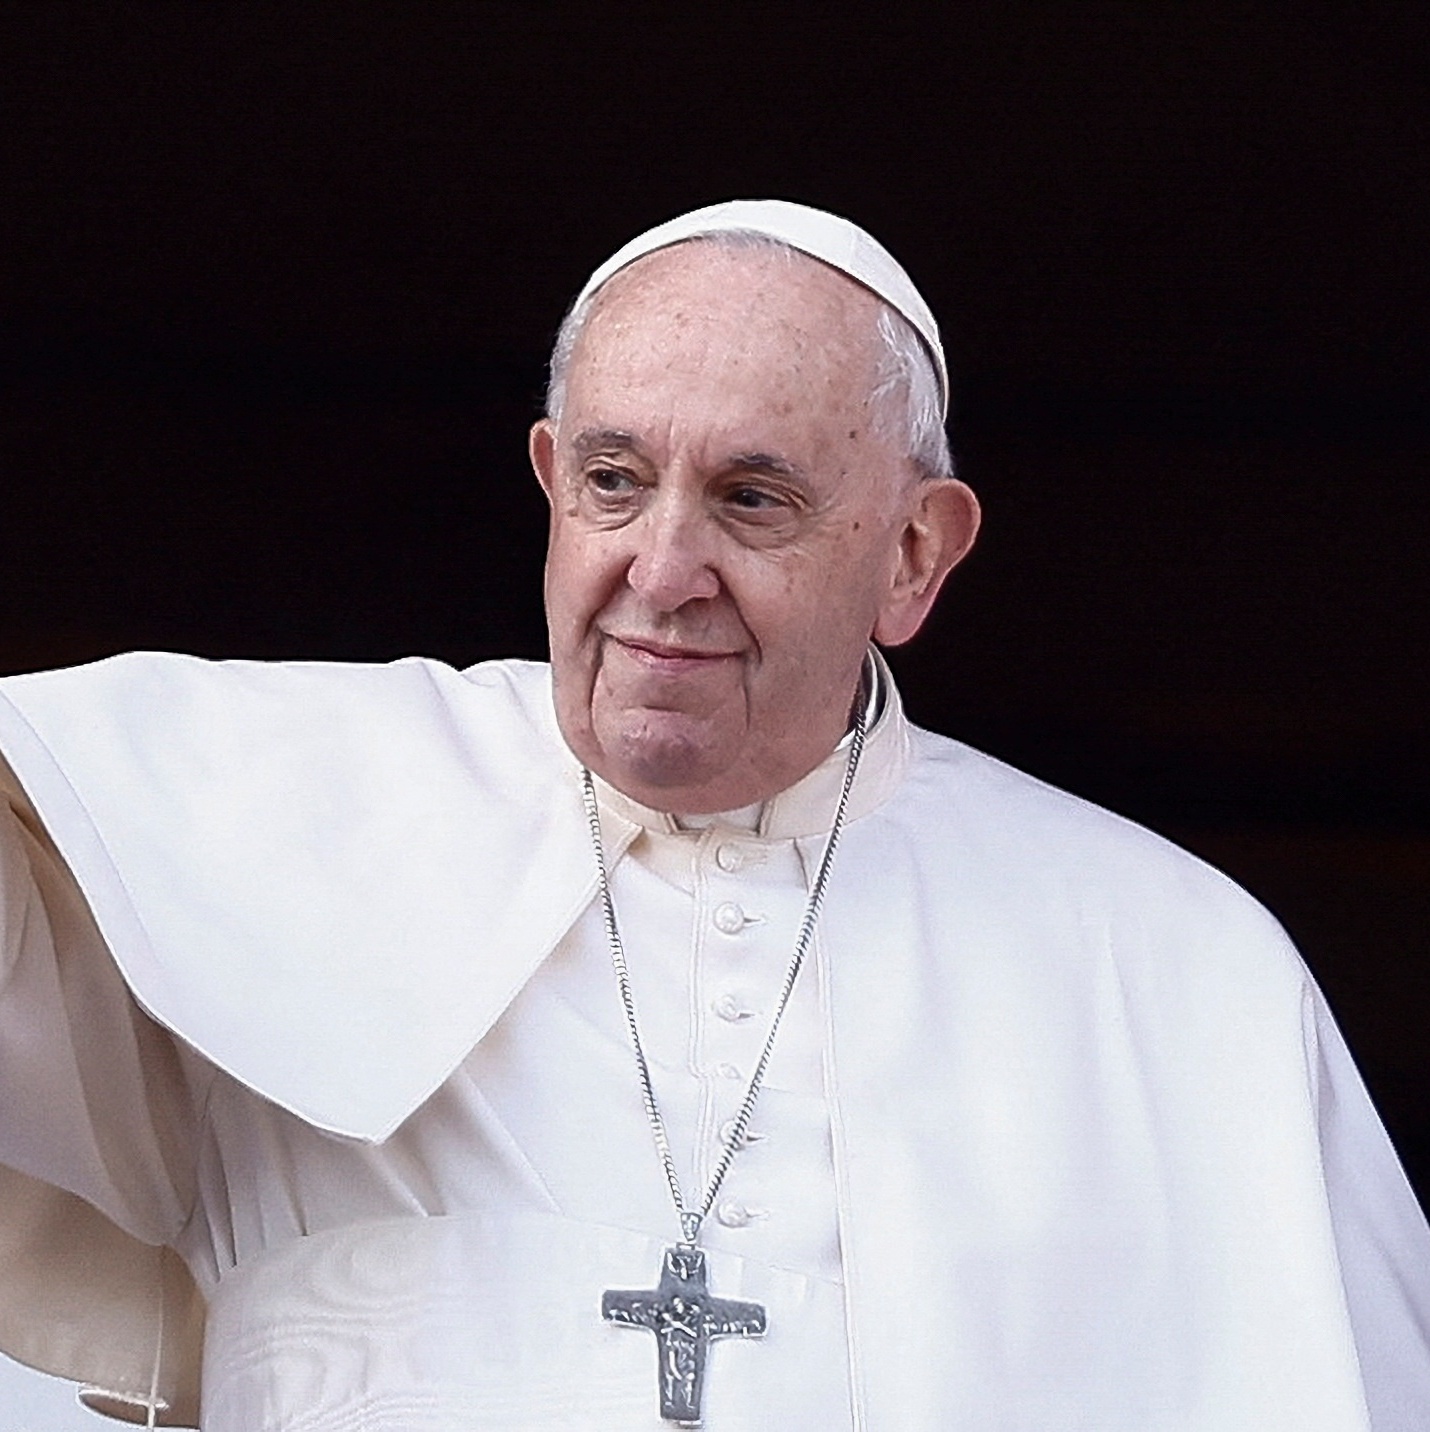 Papa Francisco diz que está com bronquite aguda infecciosa e pede orações